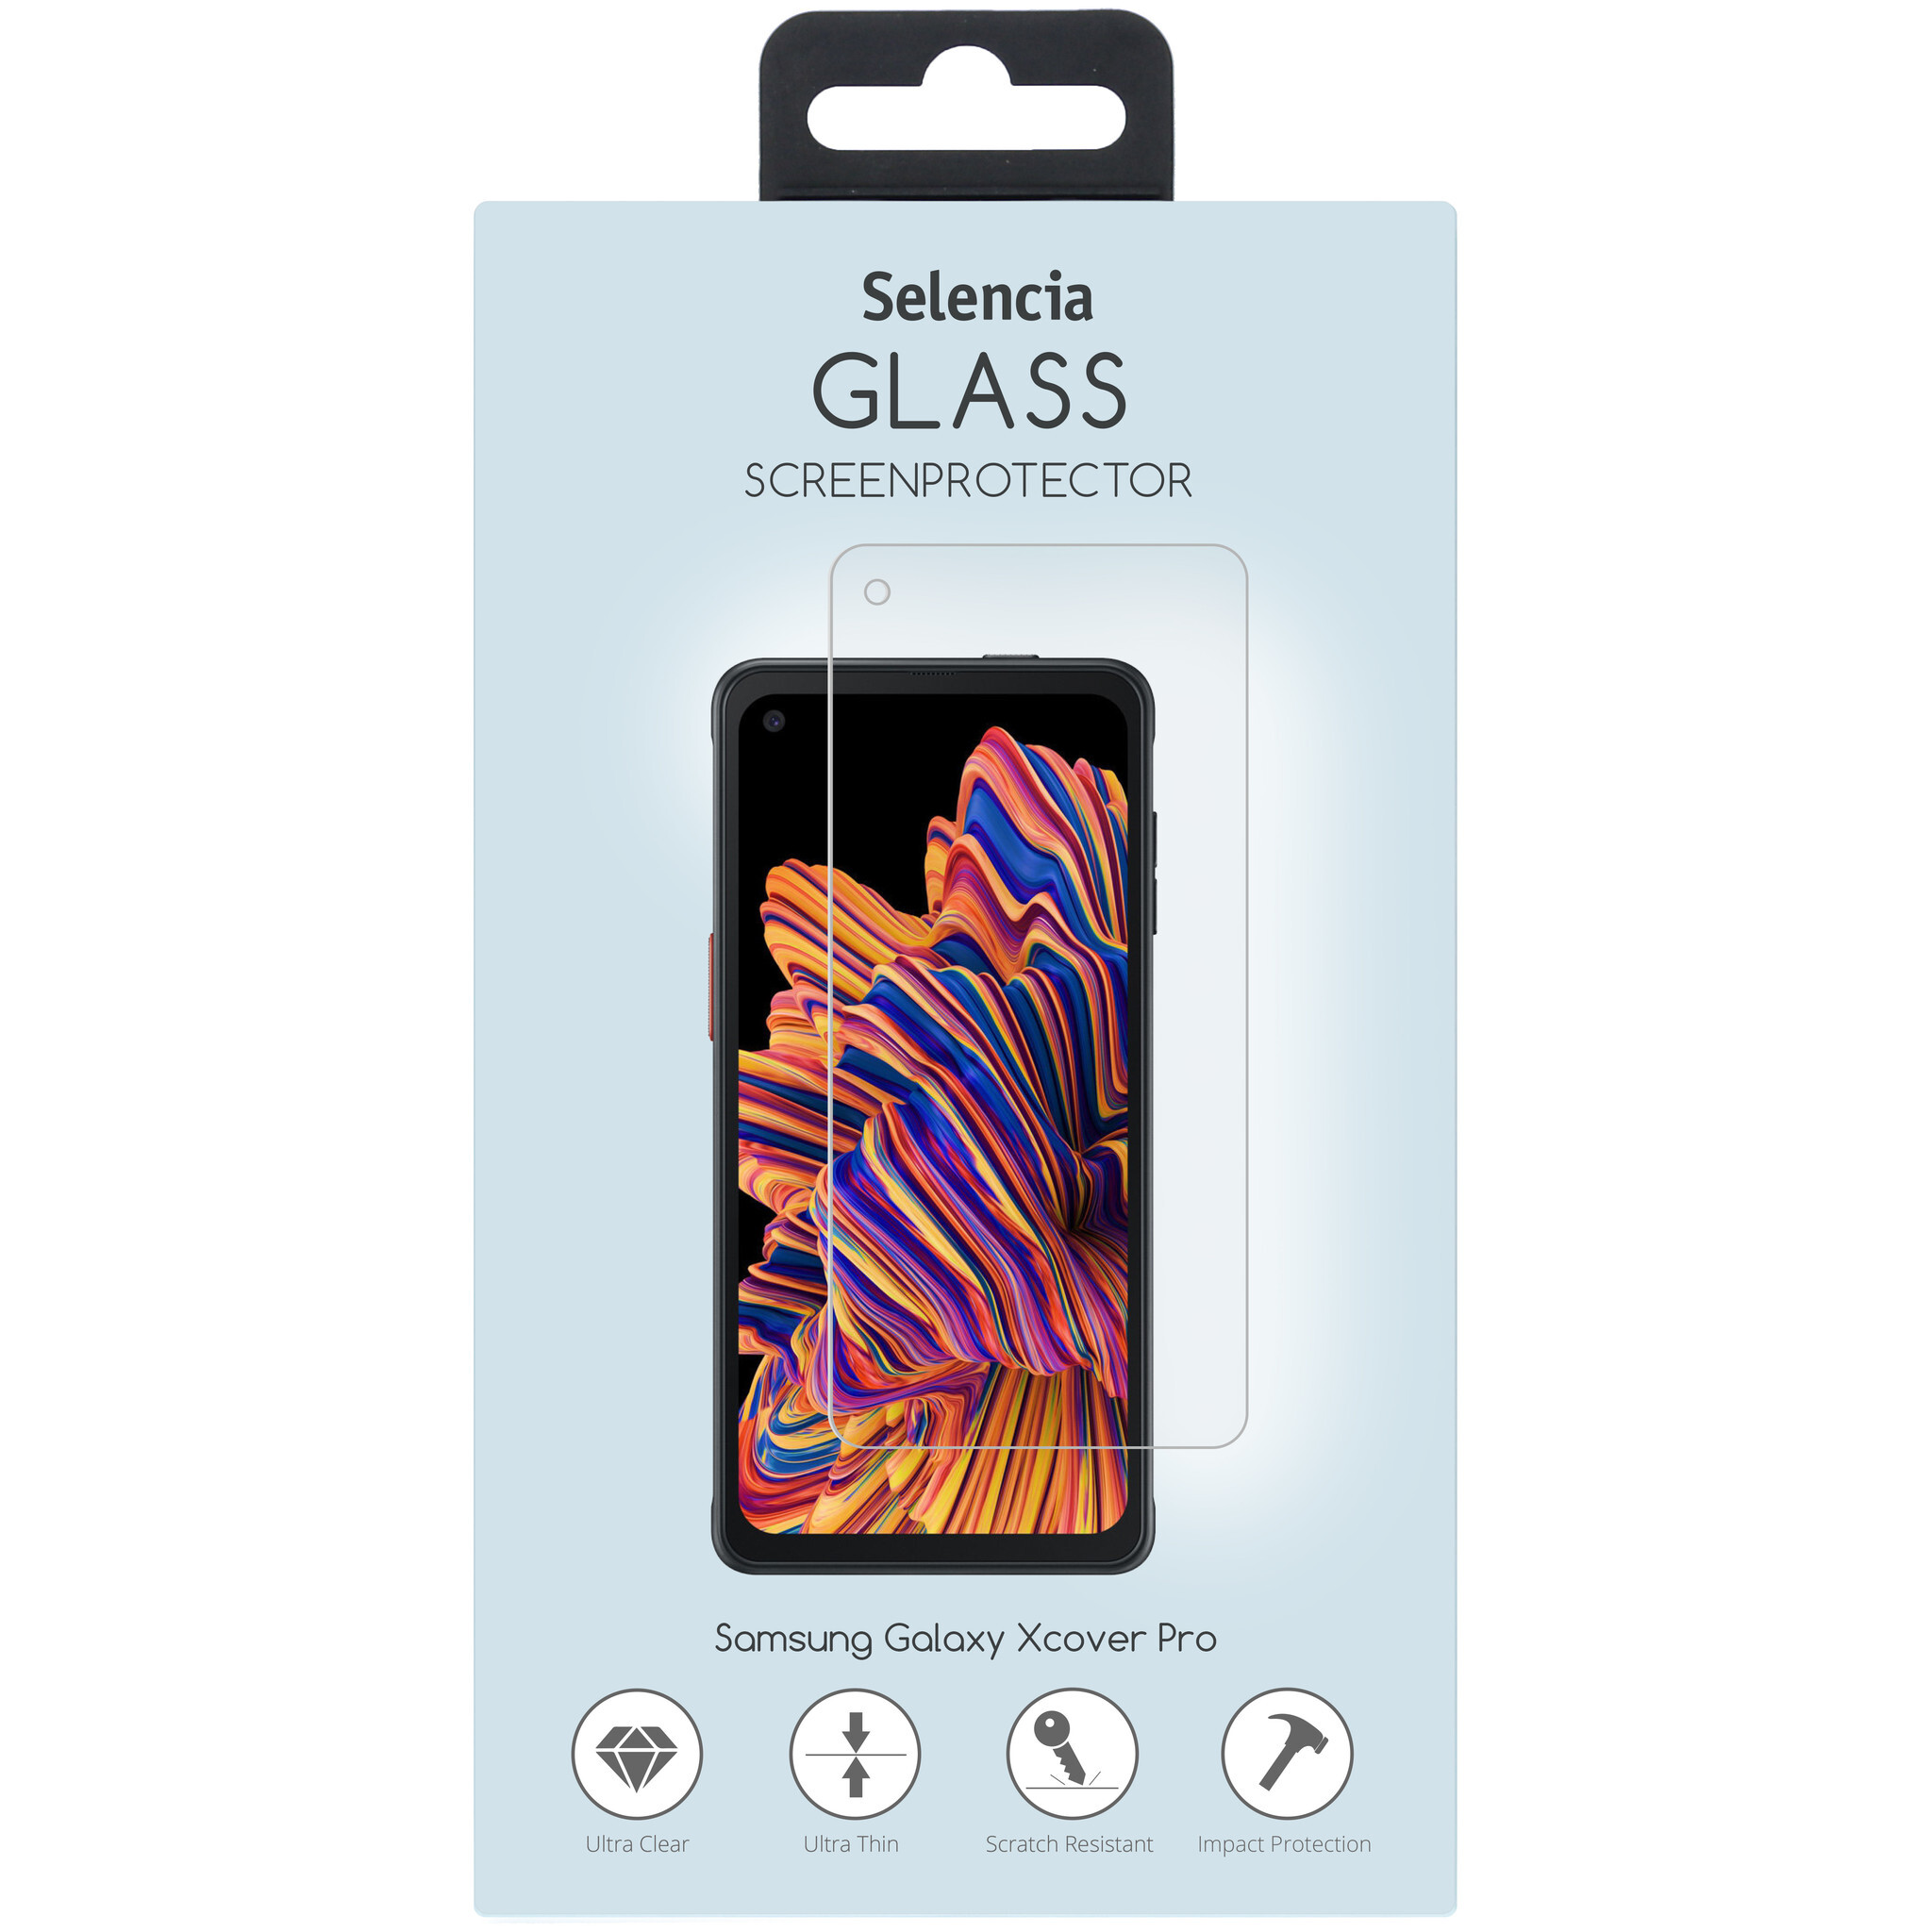 Selencia Glas Screenprotector voor de Samsung Galaxy Xcover Pro